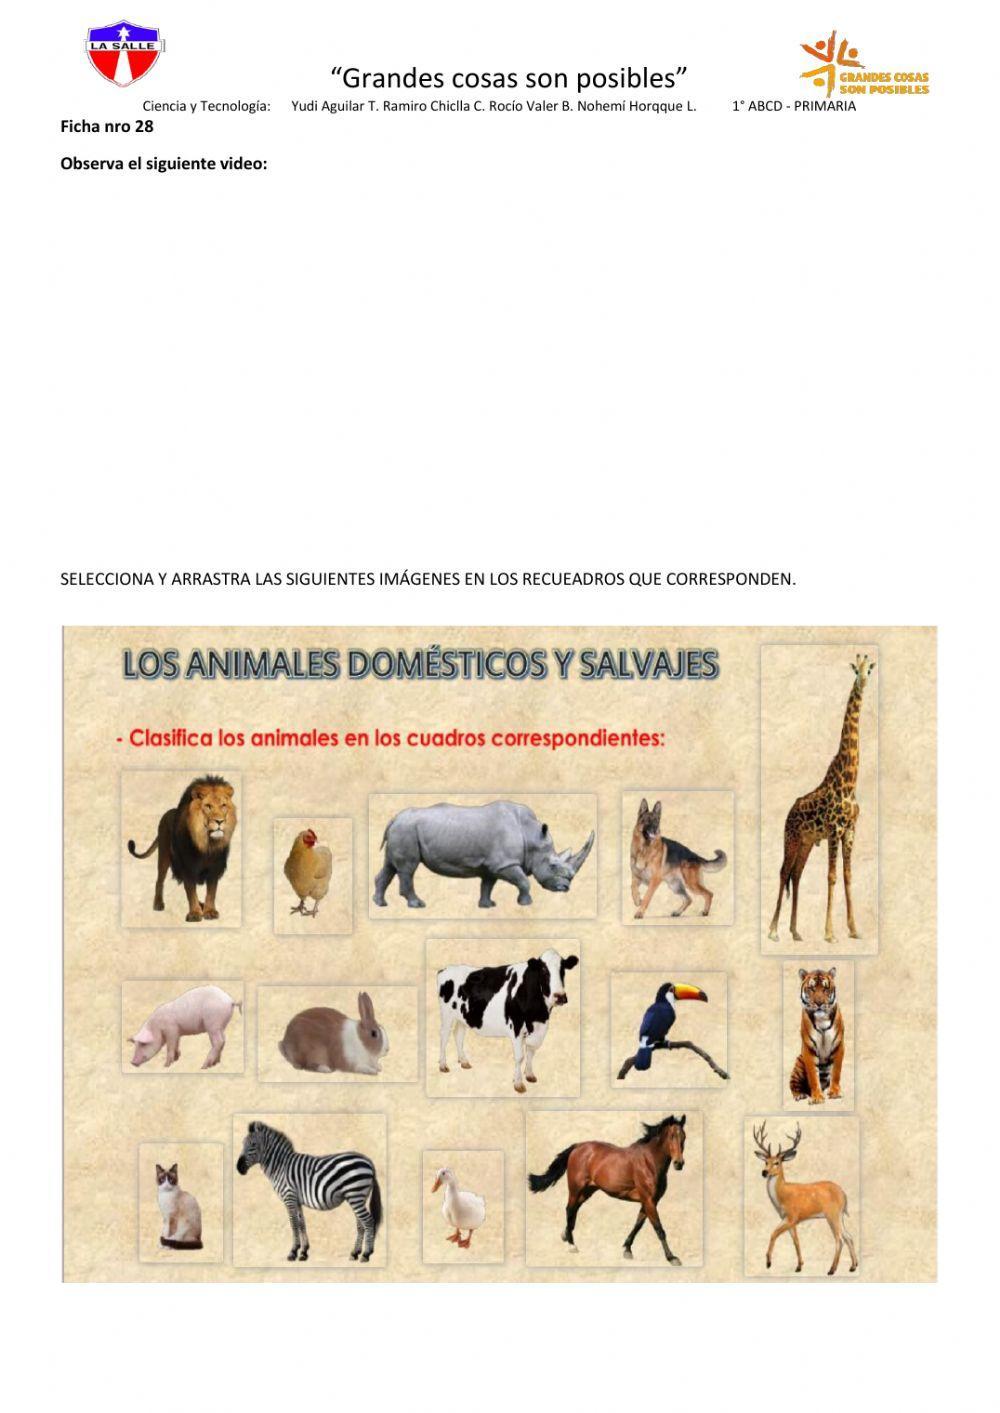 Animales salvajes y animales domésticos